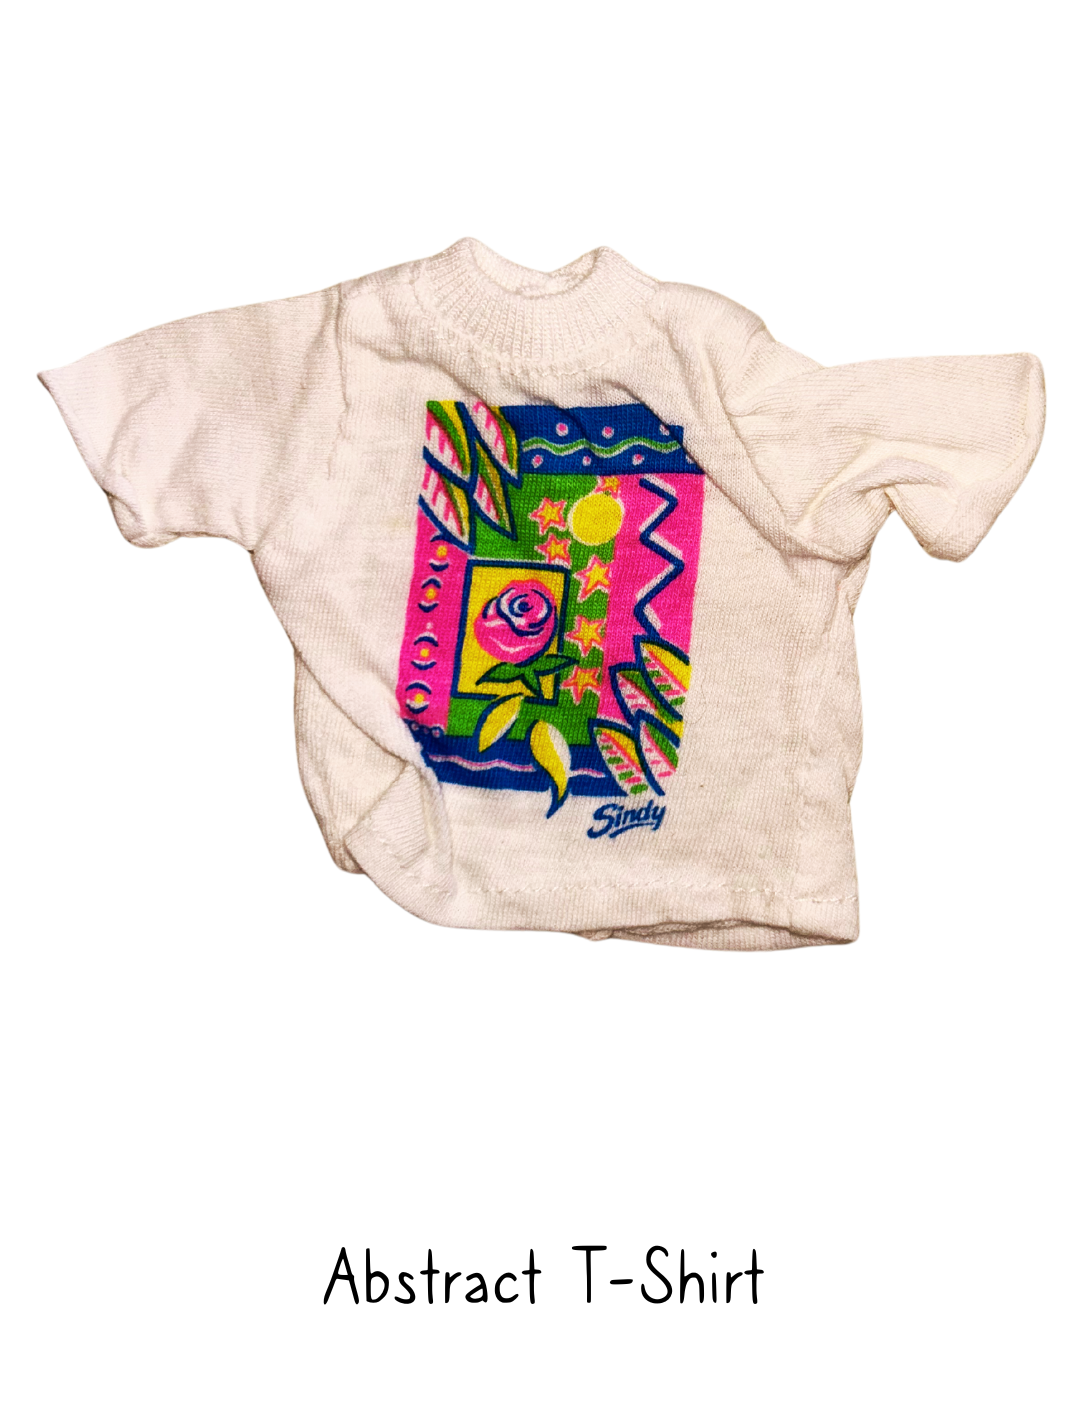 1992 Hasbro Sindy Abstract T-Shirt